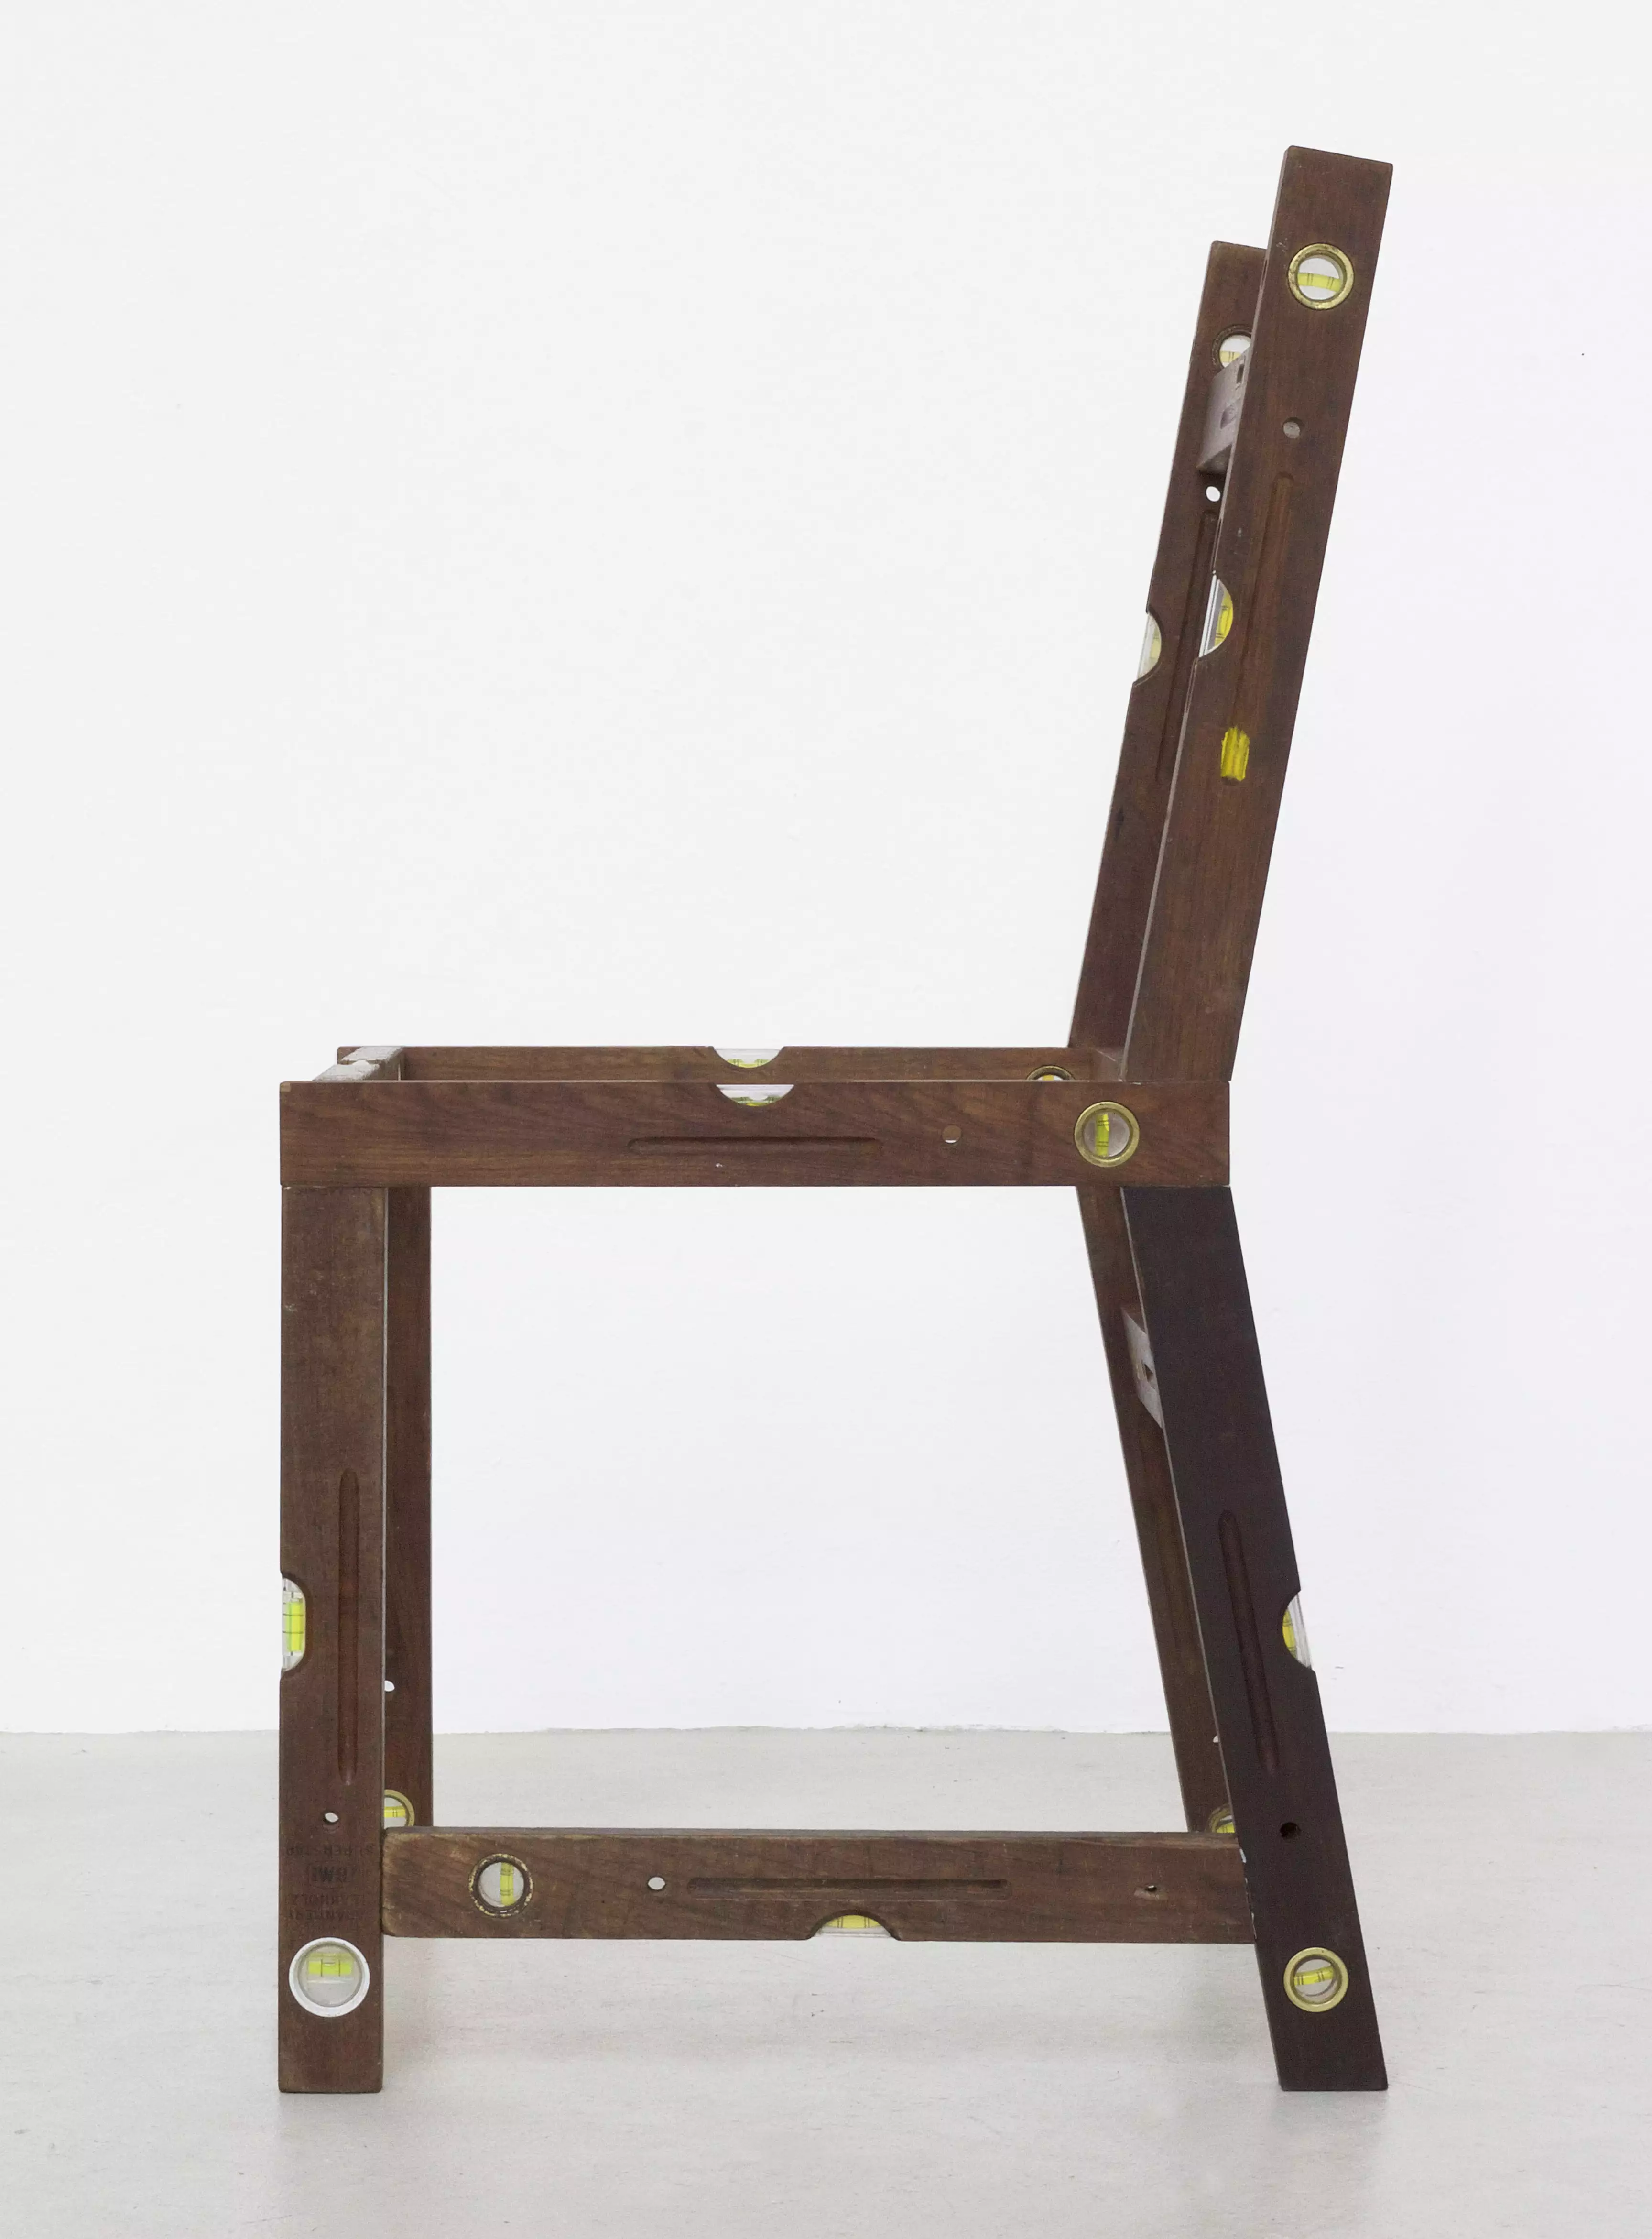 A Chair for Architekten (2)